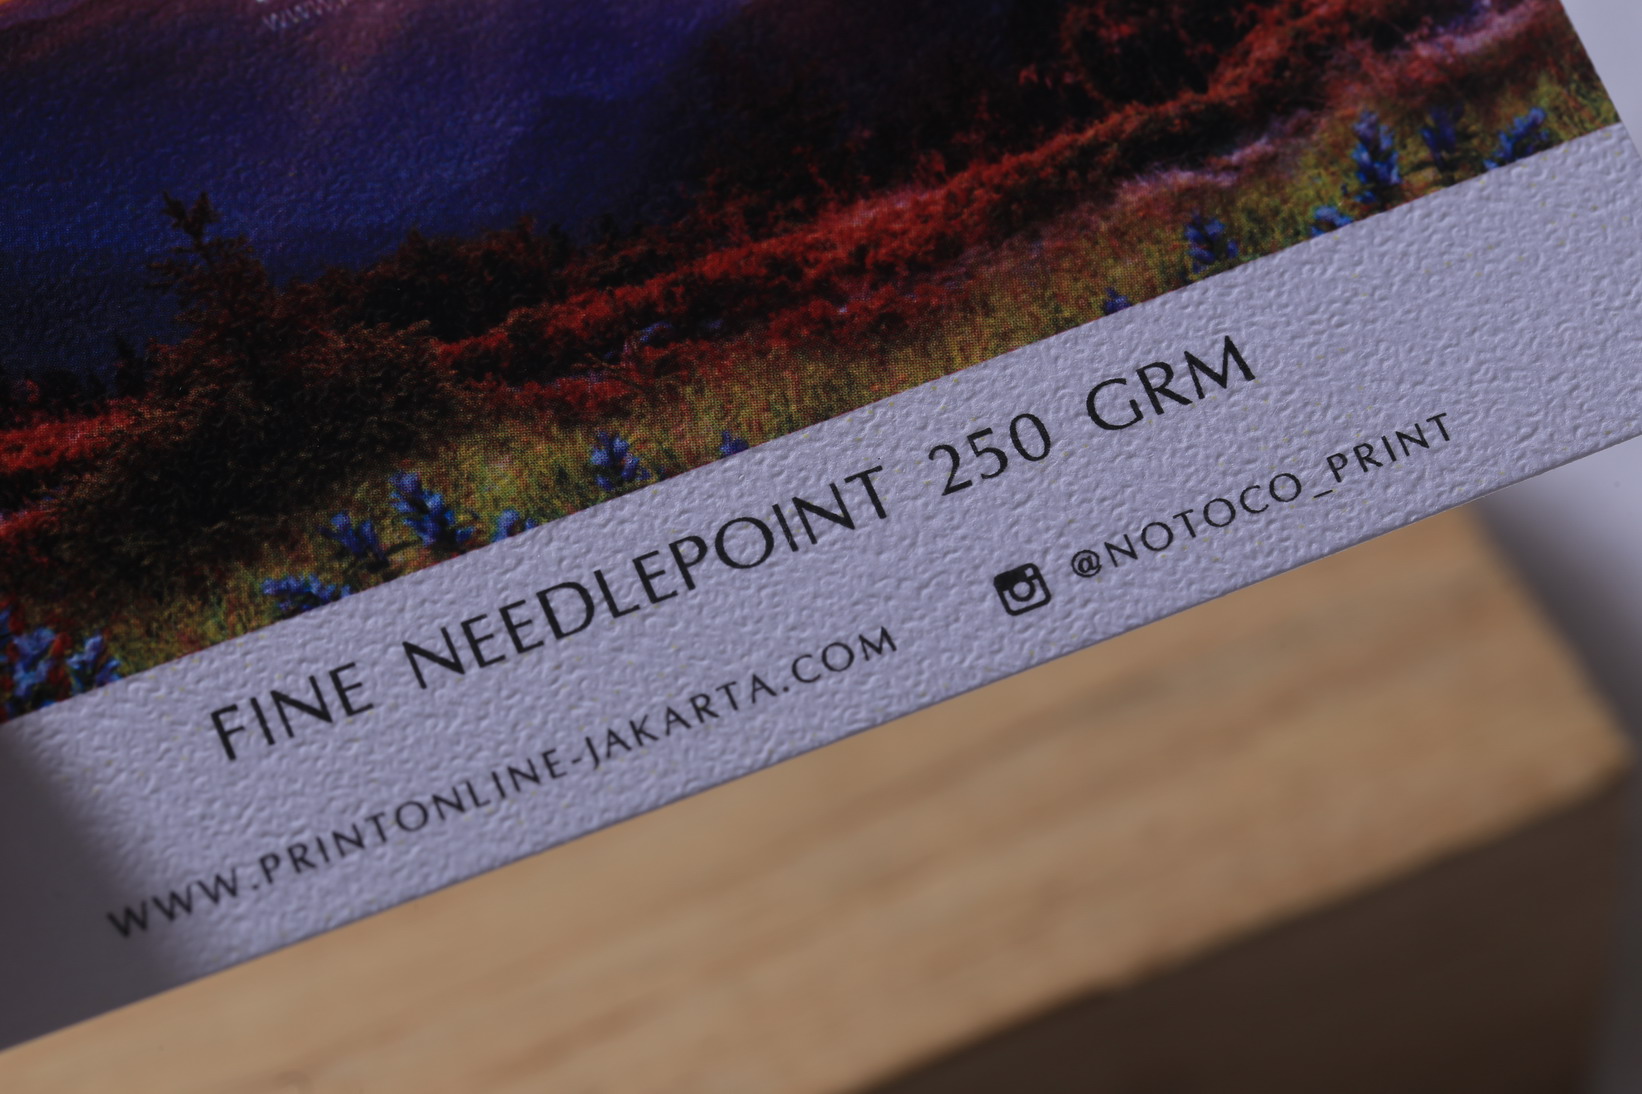 Fine Neddle Point 250 grm